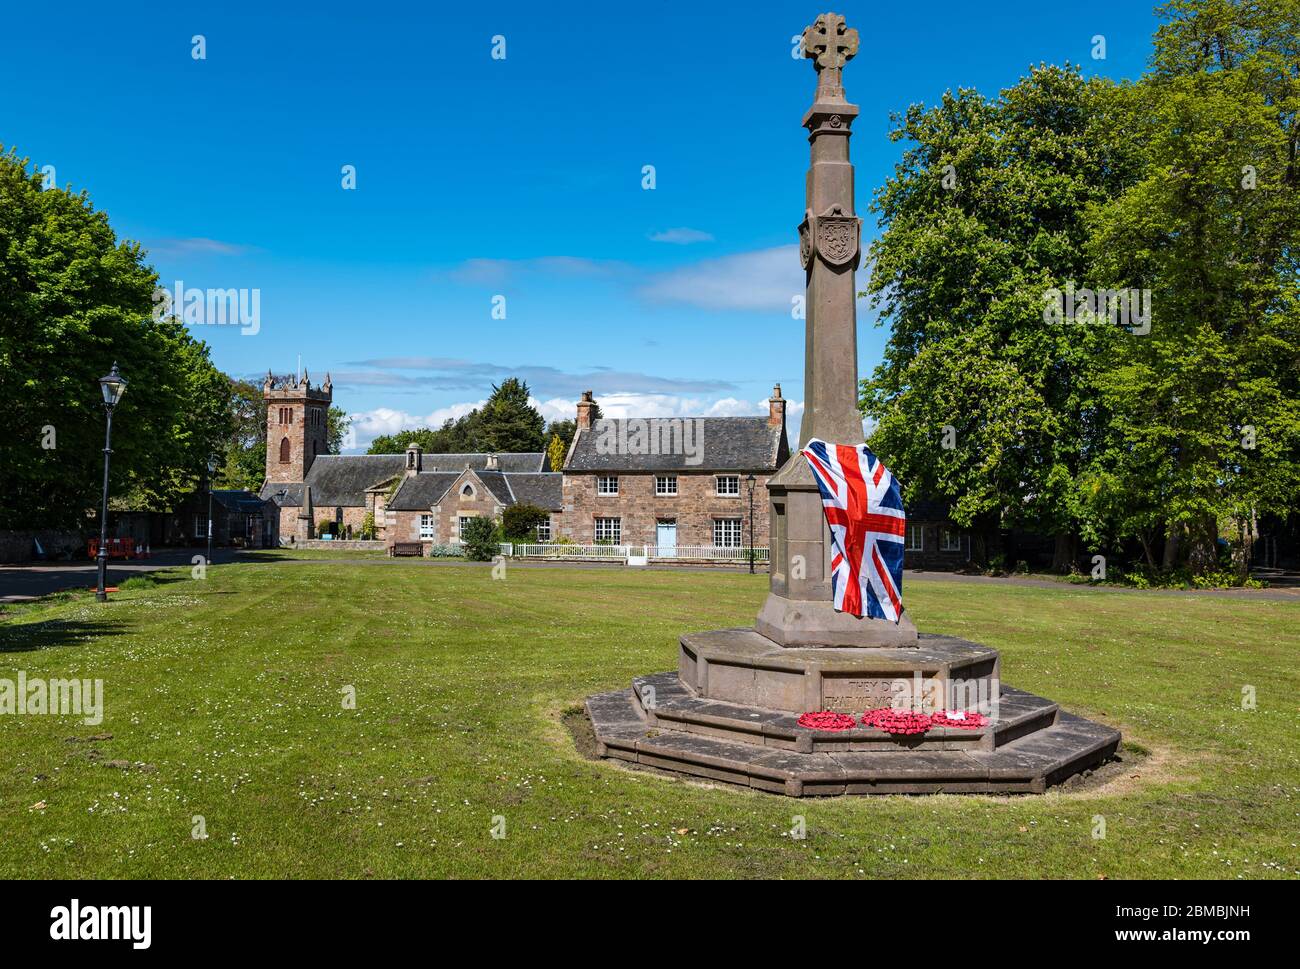 Village de Dirleton, East Lothian, Écosse, Royaume-Uni. 8 mai 2020. Fête de la VE : un drapeau de l'Union Jack a surpassé le mémorial de guerre dans le village vert lors de la 75e commémoration de la victoire en Europe Banque D'Images